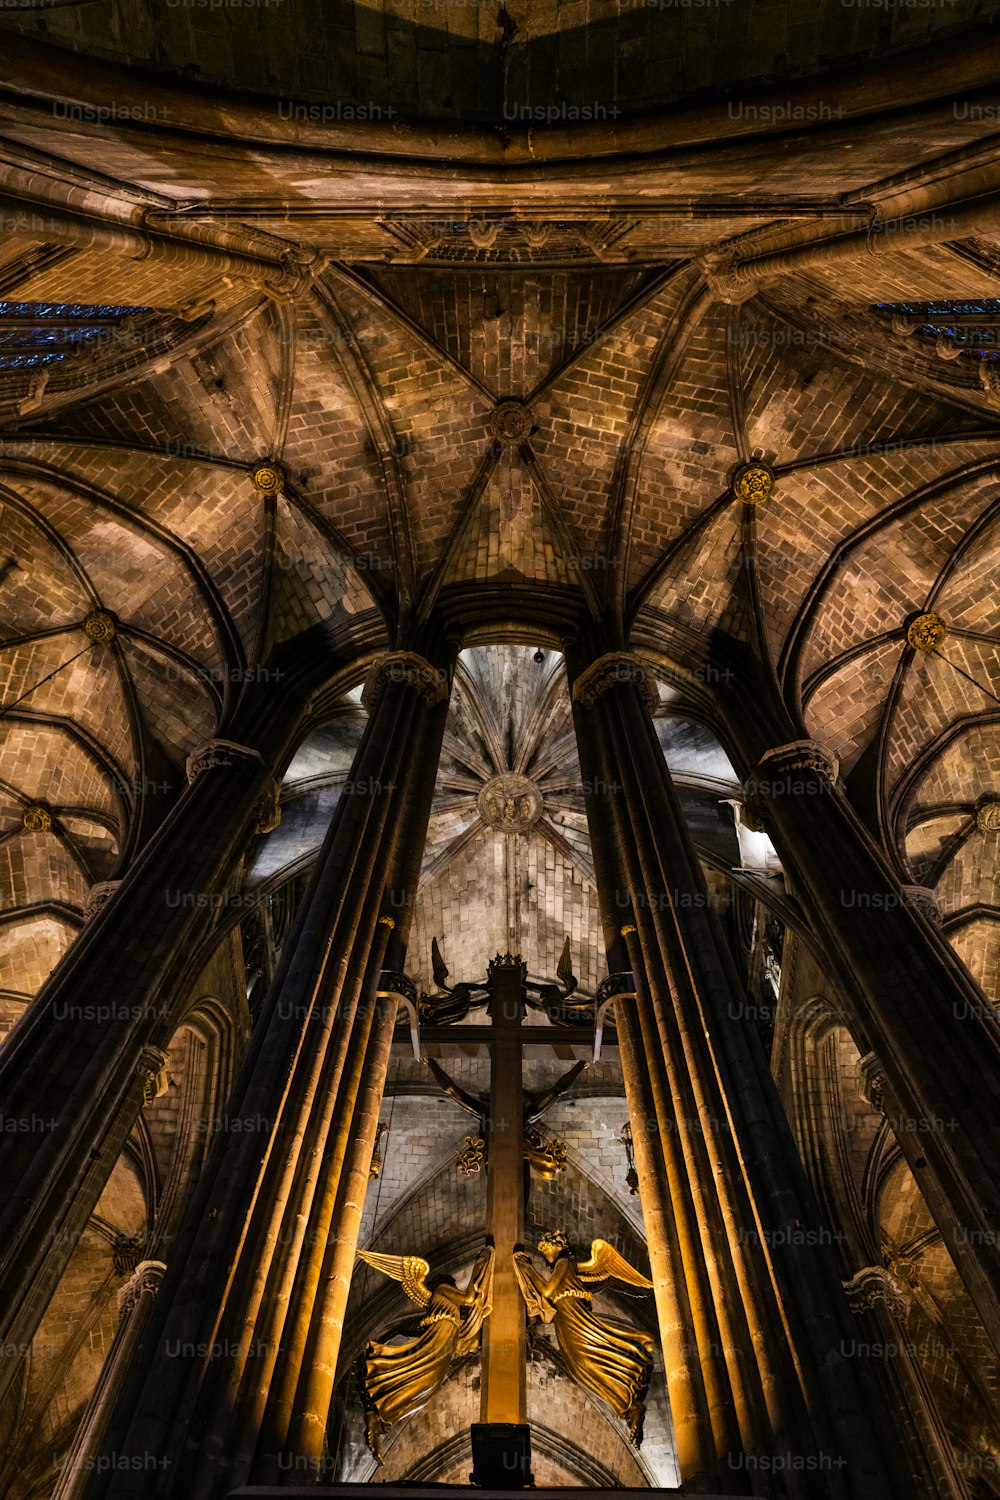 Vista interna da catedral gótica de Barcelona, também conhecida como La Seu, localizada no coração do Bairro Gótico de Barcelona.